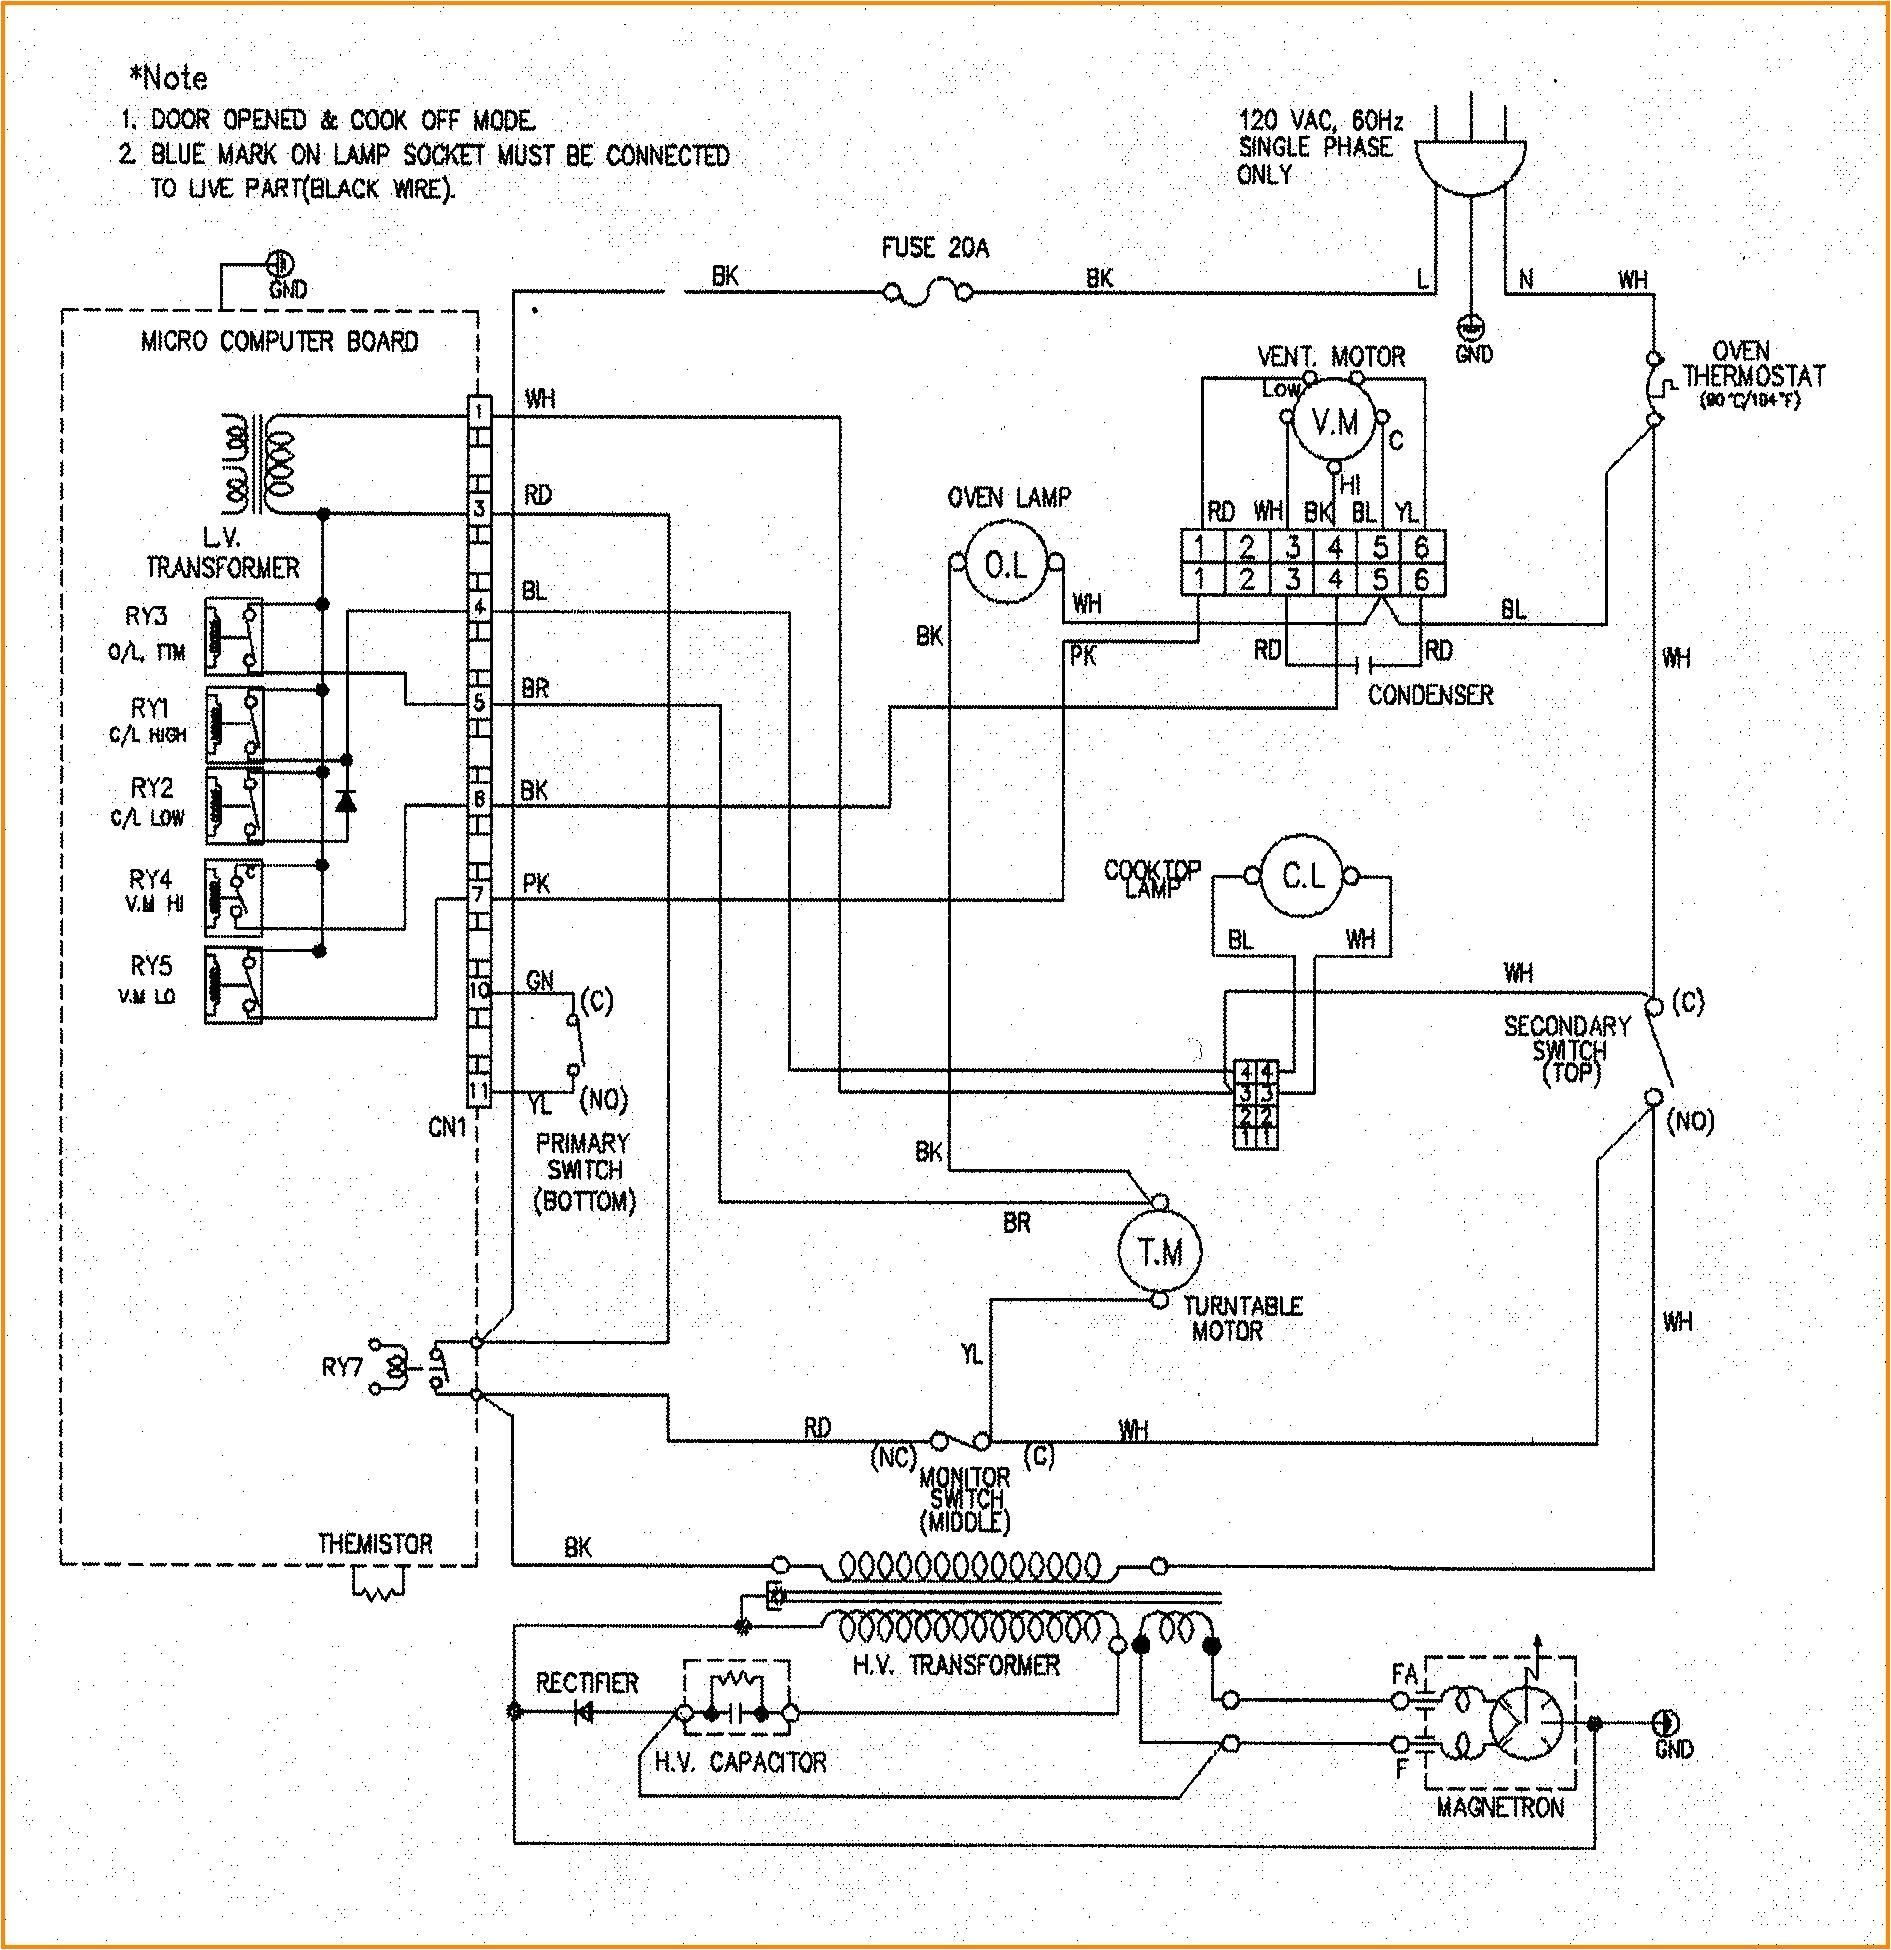 vwr oven wiring diagram 1660 circuit diagram wiring diagram vwr oven wiring diagram 1660